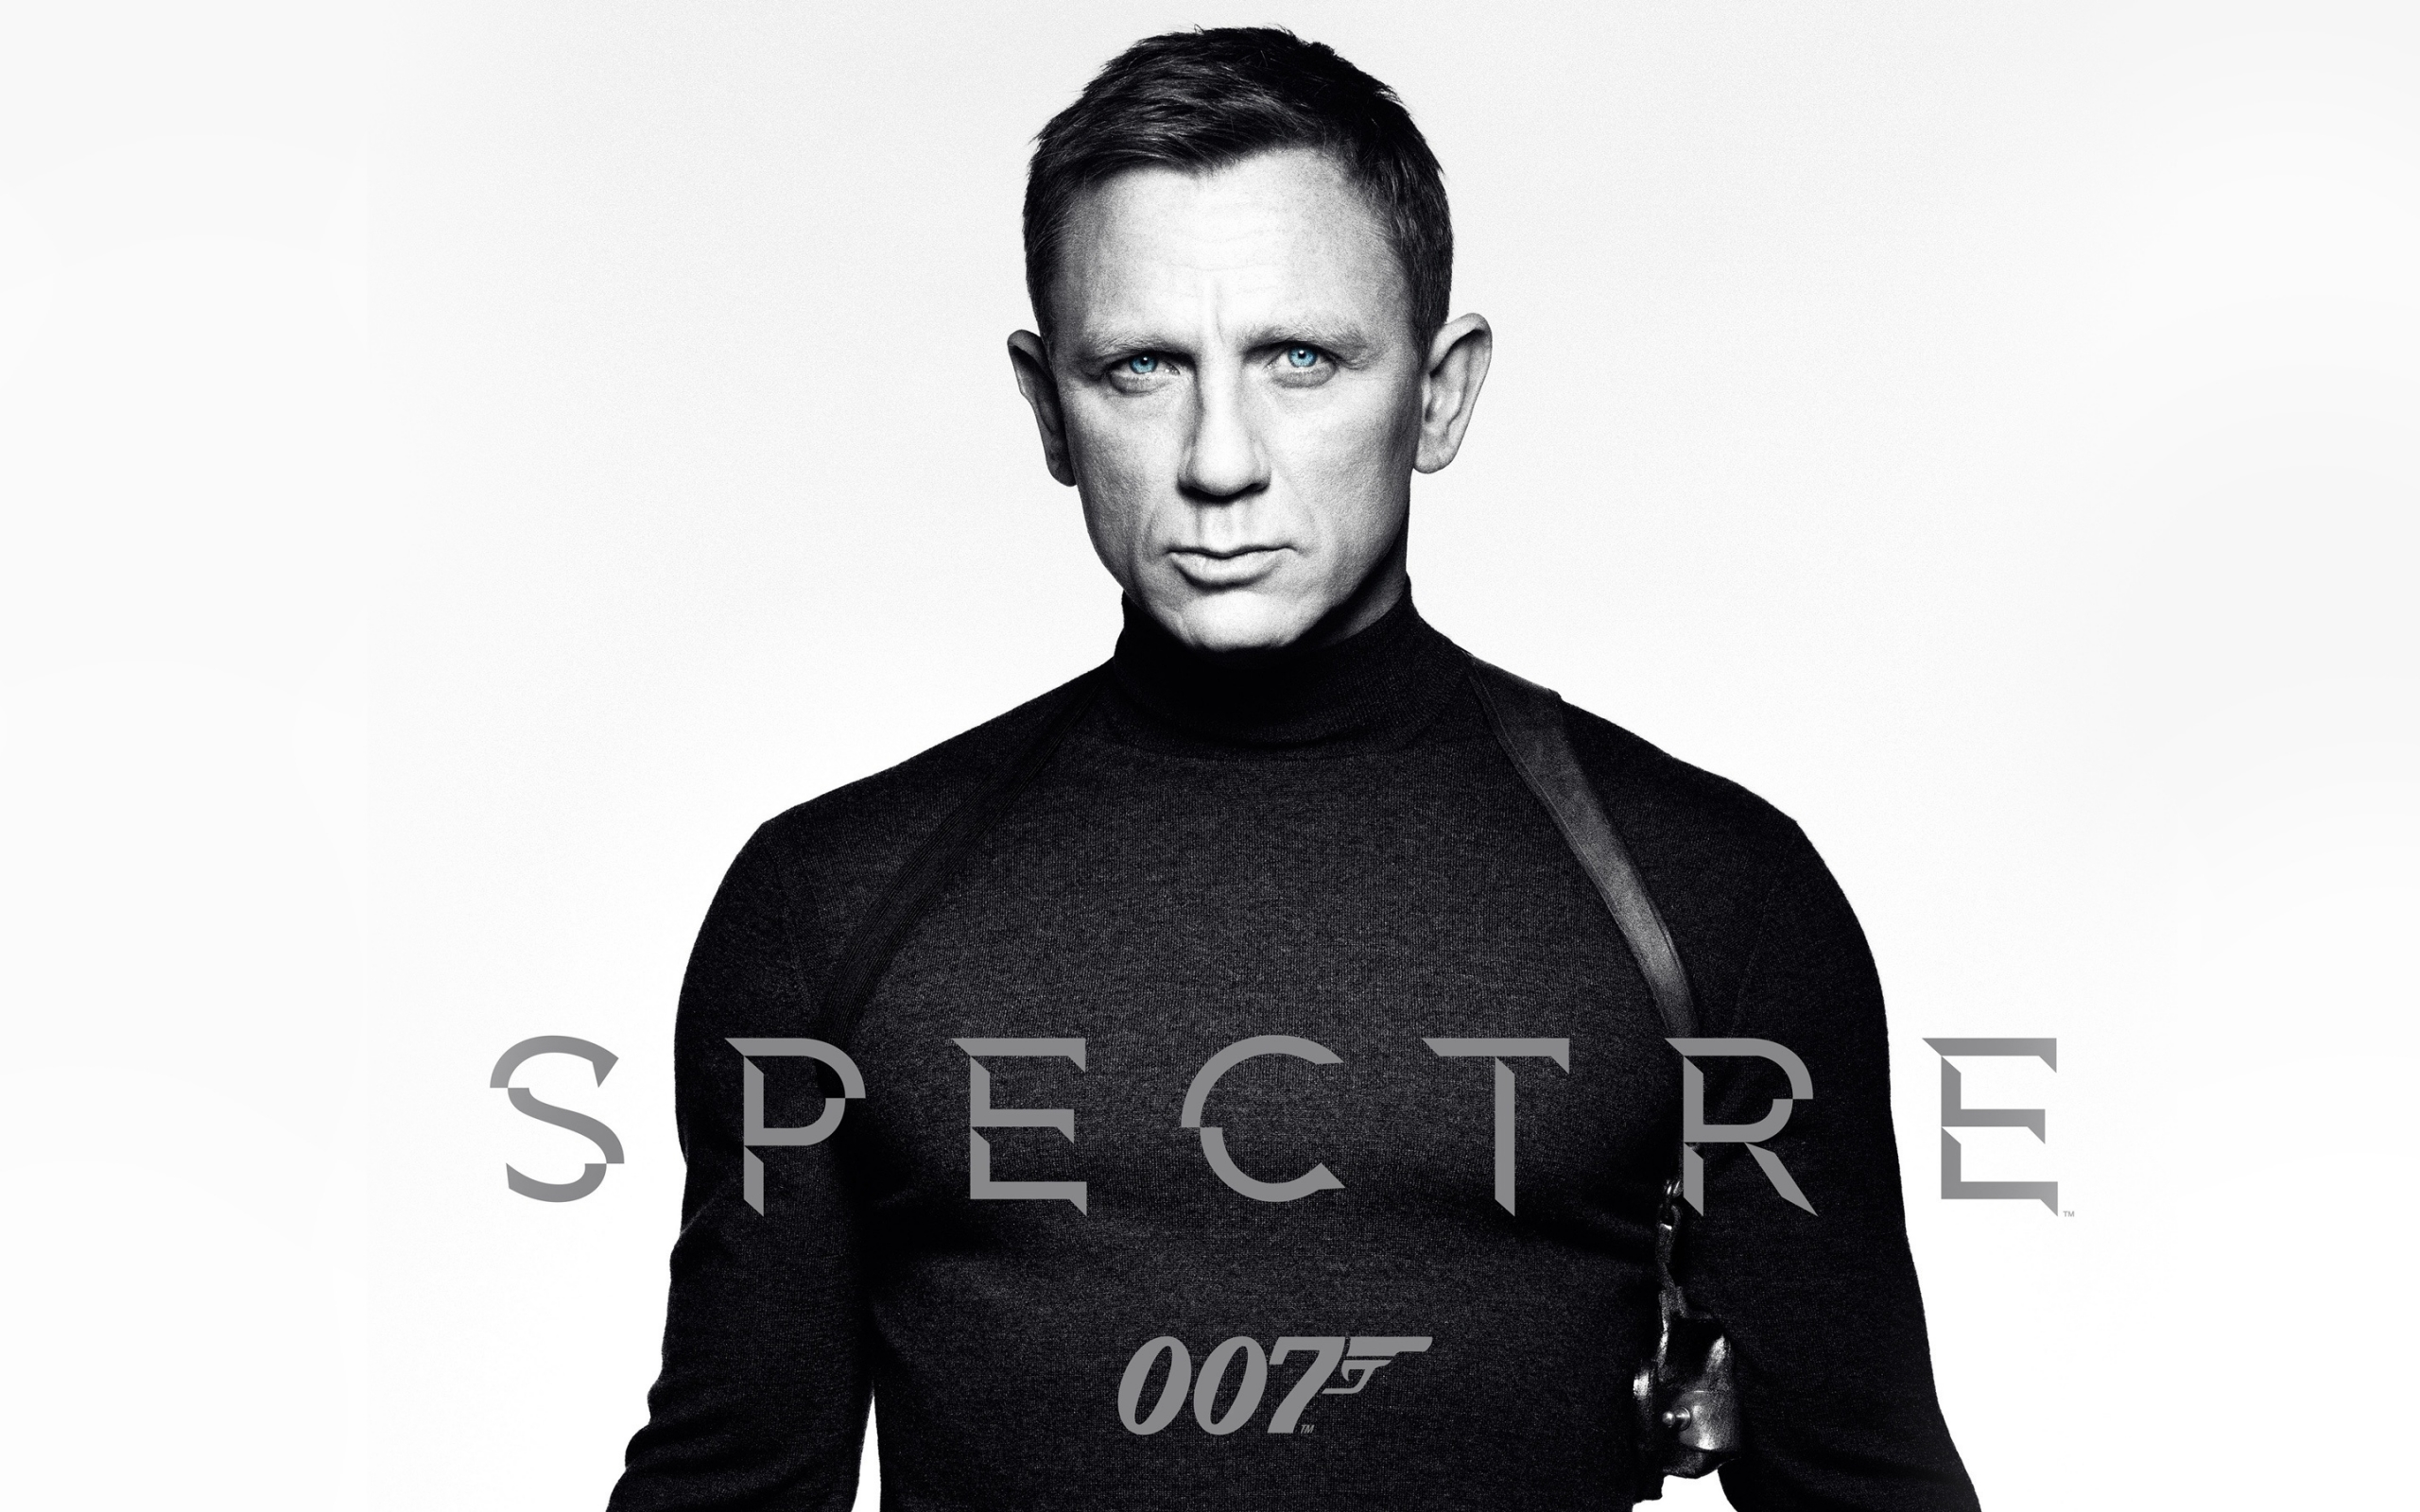 Spectre James Bond 007 for 2560 x 1600 widescreen resolution